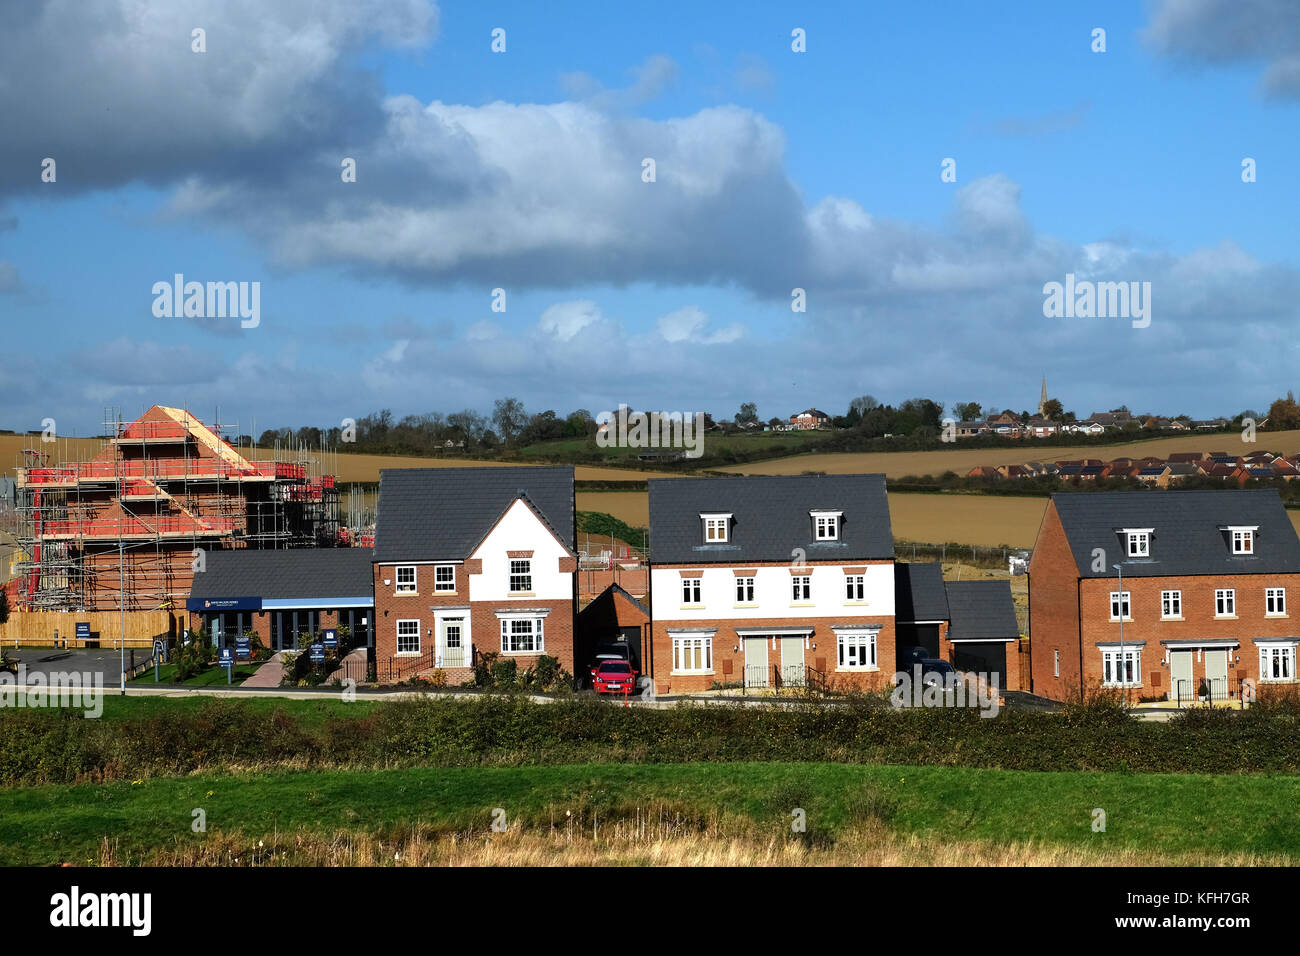 Développement de nouveaux housing estate, Grantham, Lincolnshire, Angleterre, Royaume-Uni. Banque D'Images